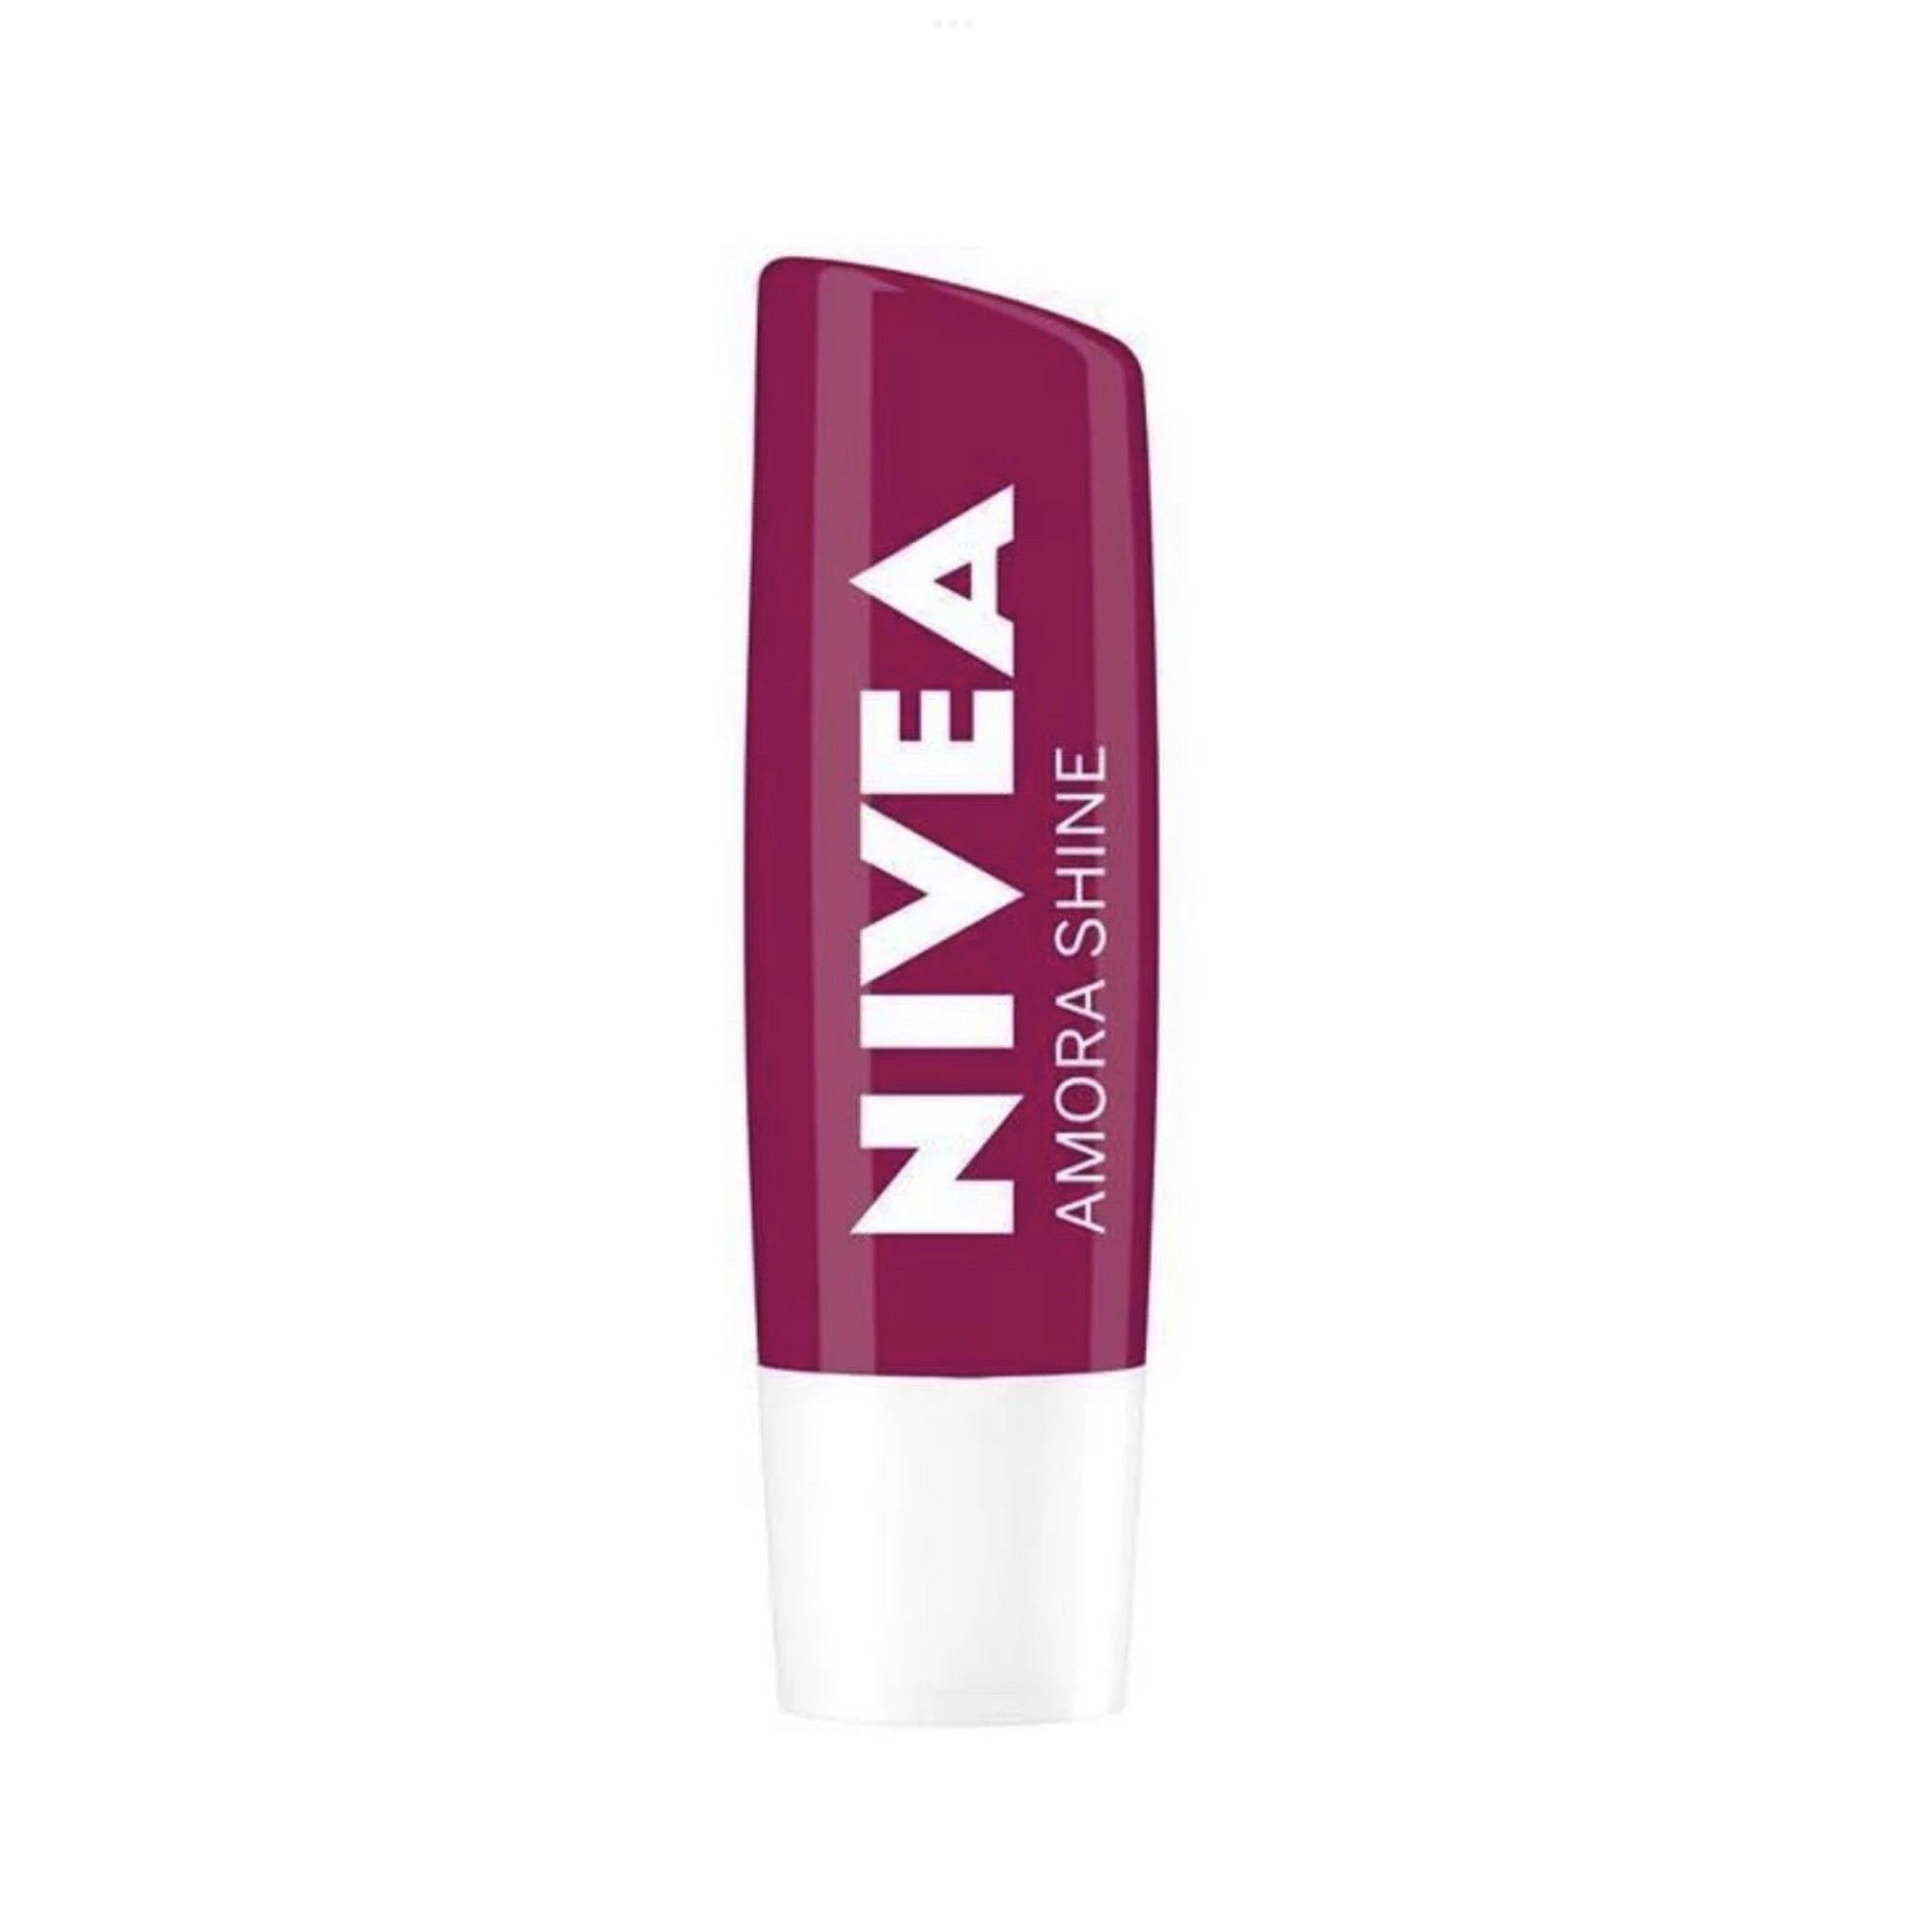  Protetor labial Shine da Nivea (Foto: Reprodução marca)